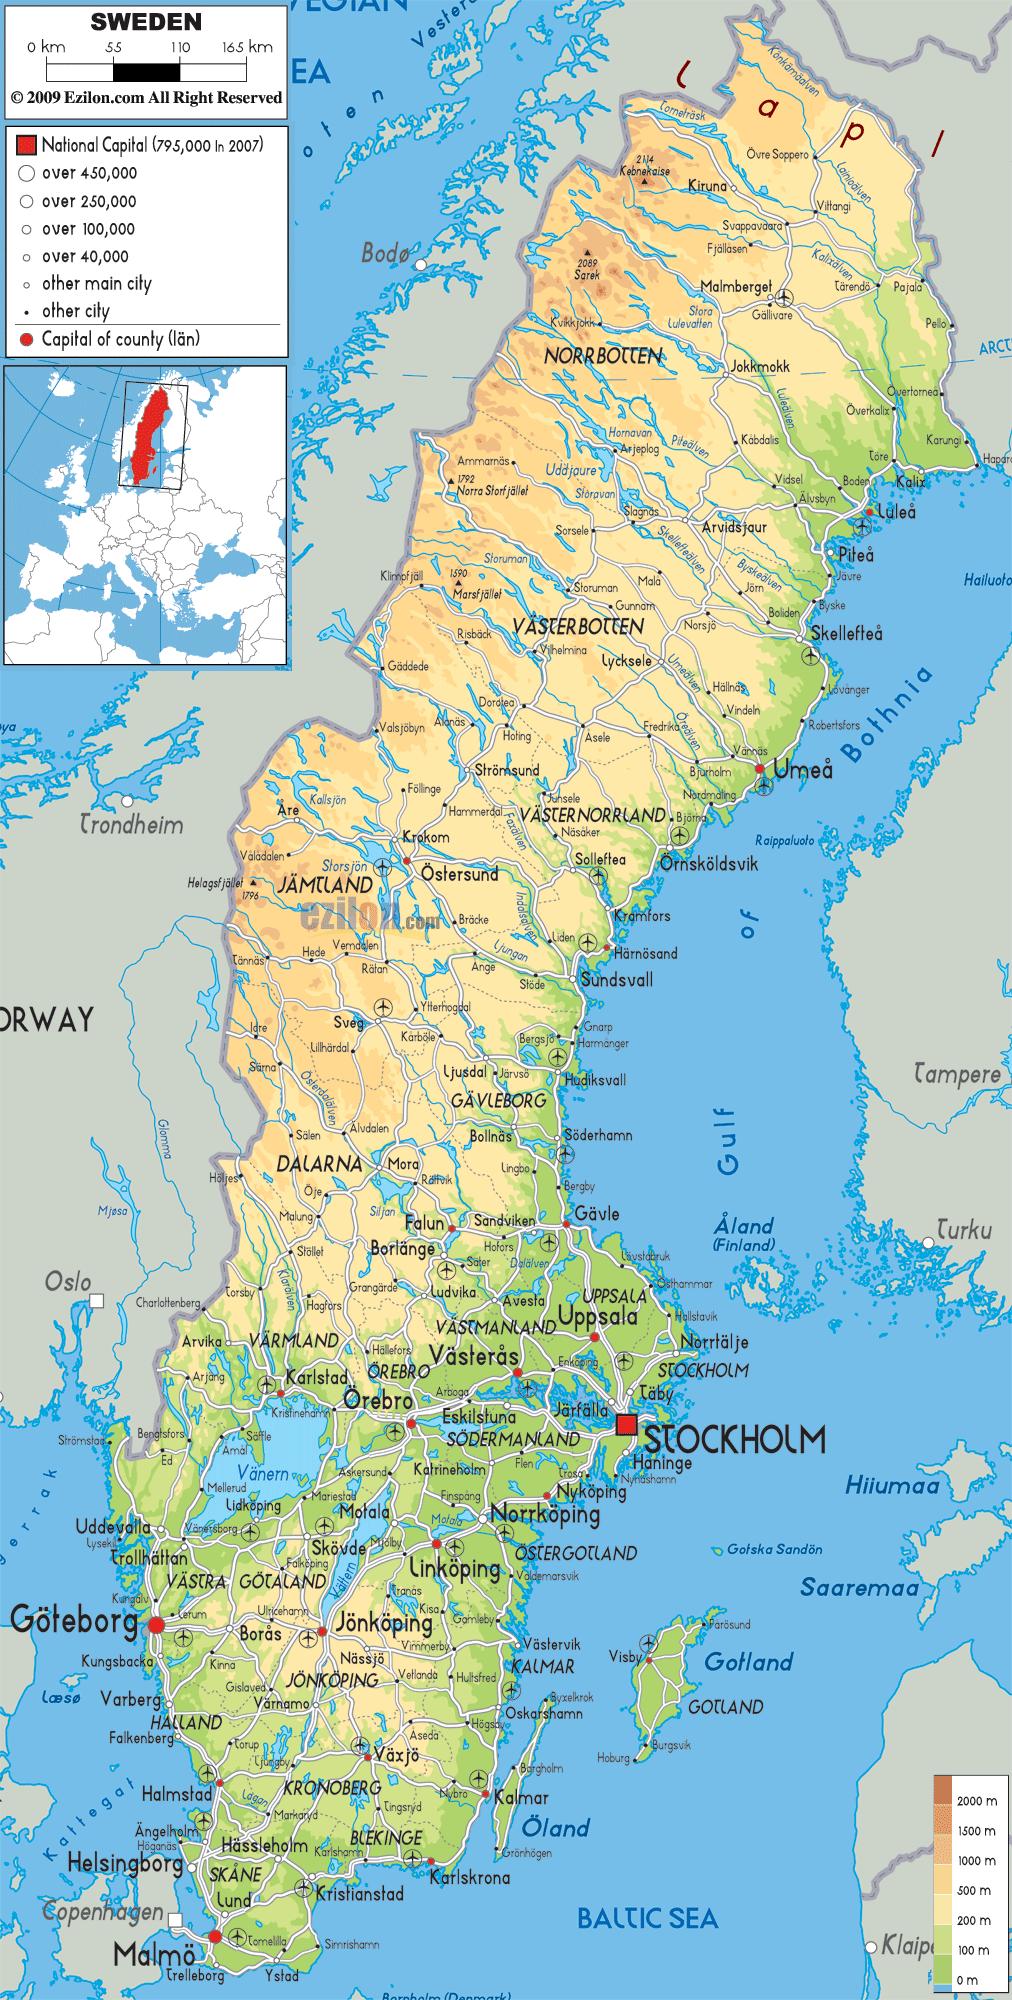 Sveriges geografi kort - Geografiske kort over Sverige (i det Nordlige